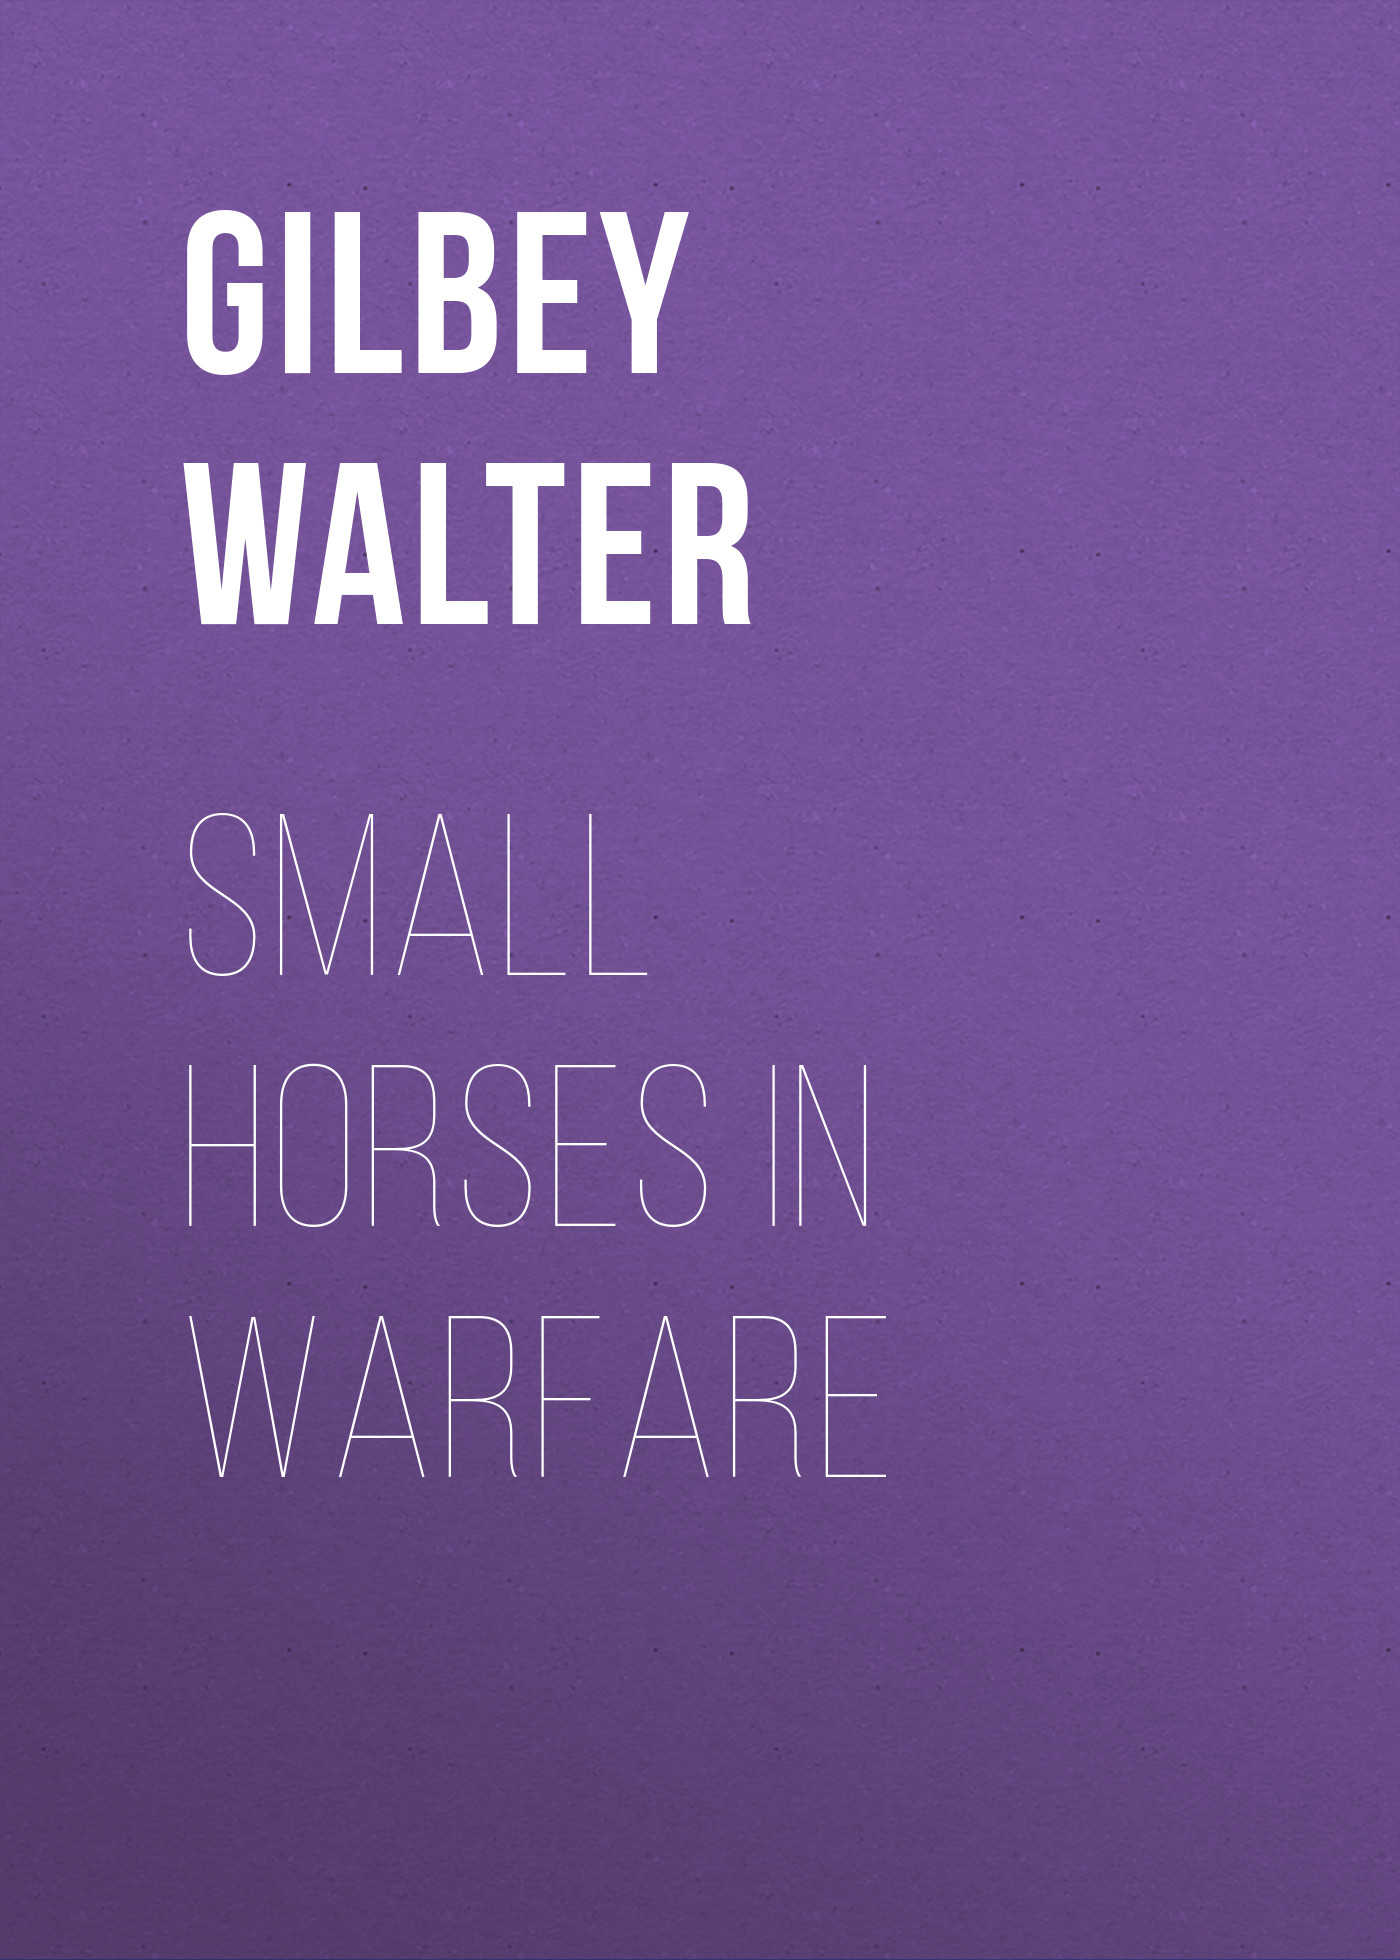 Книга Small Horses in Warfare из серии , созданная Walter Gilbey, может относится к жанру Природа и животные, Зарубежная старинная литература, Зарубежная классика. Стоимость книги Small Horses in Warfare  с идентификатором 24936653 составляет 0 руб.